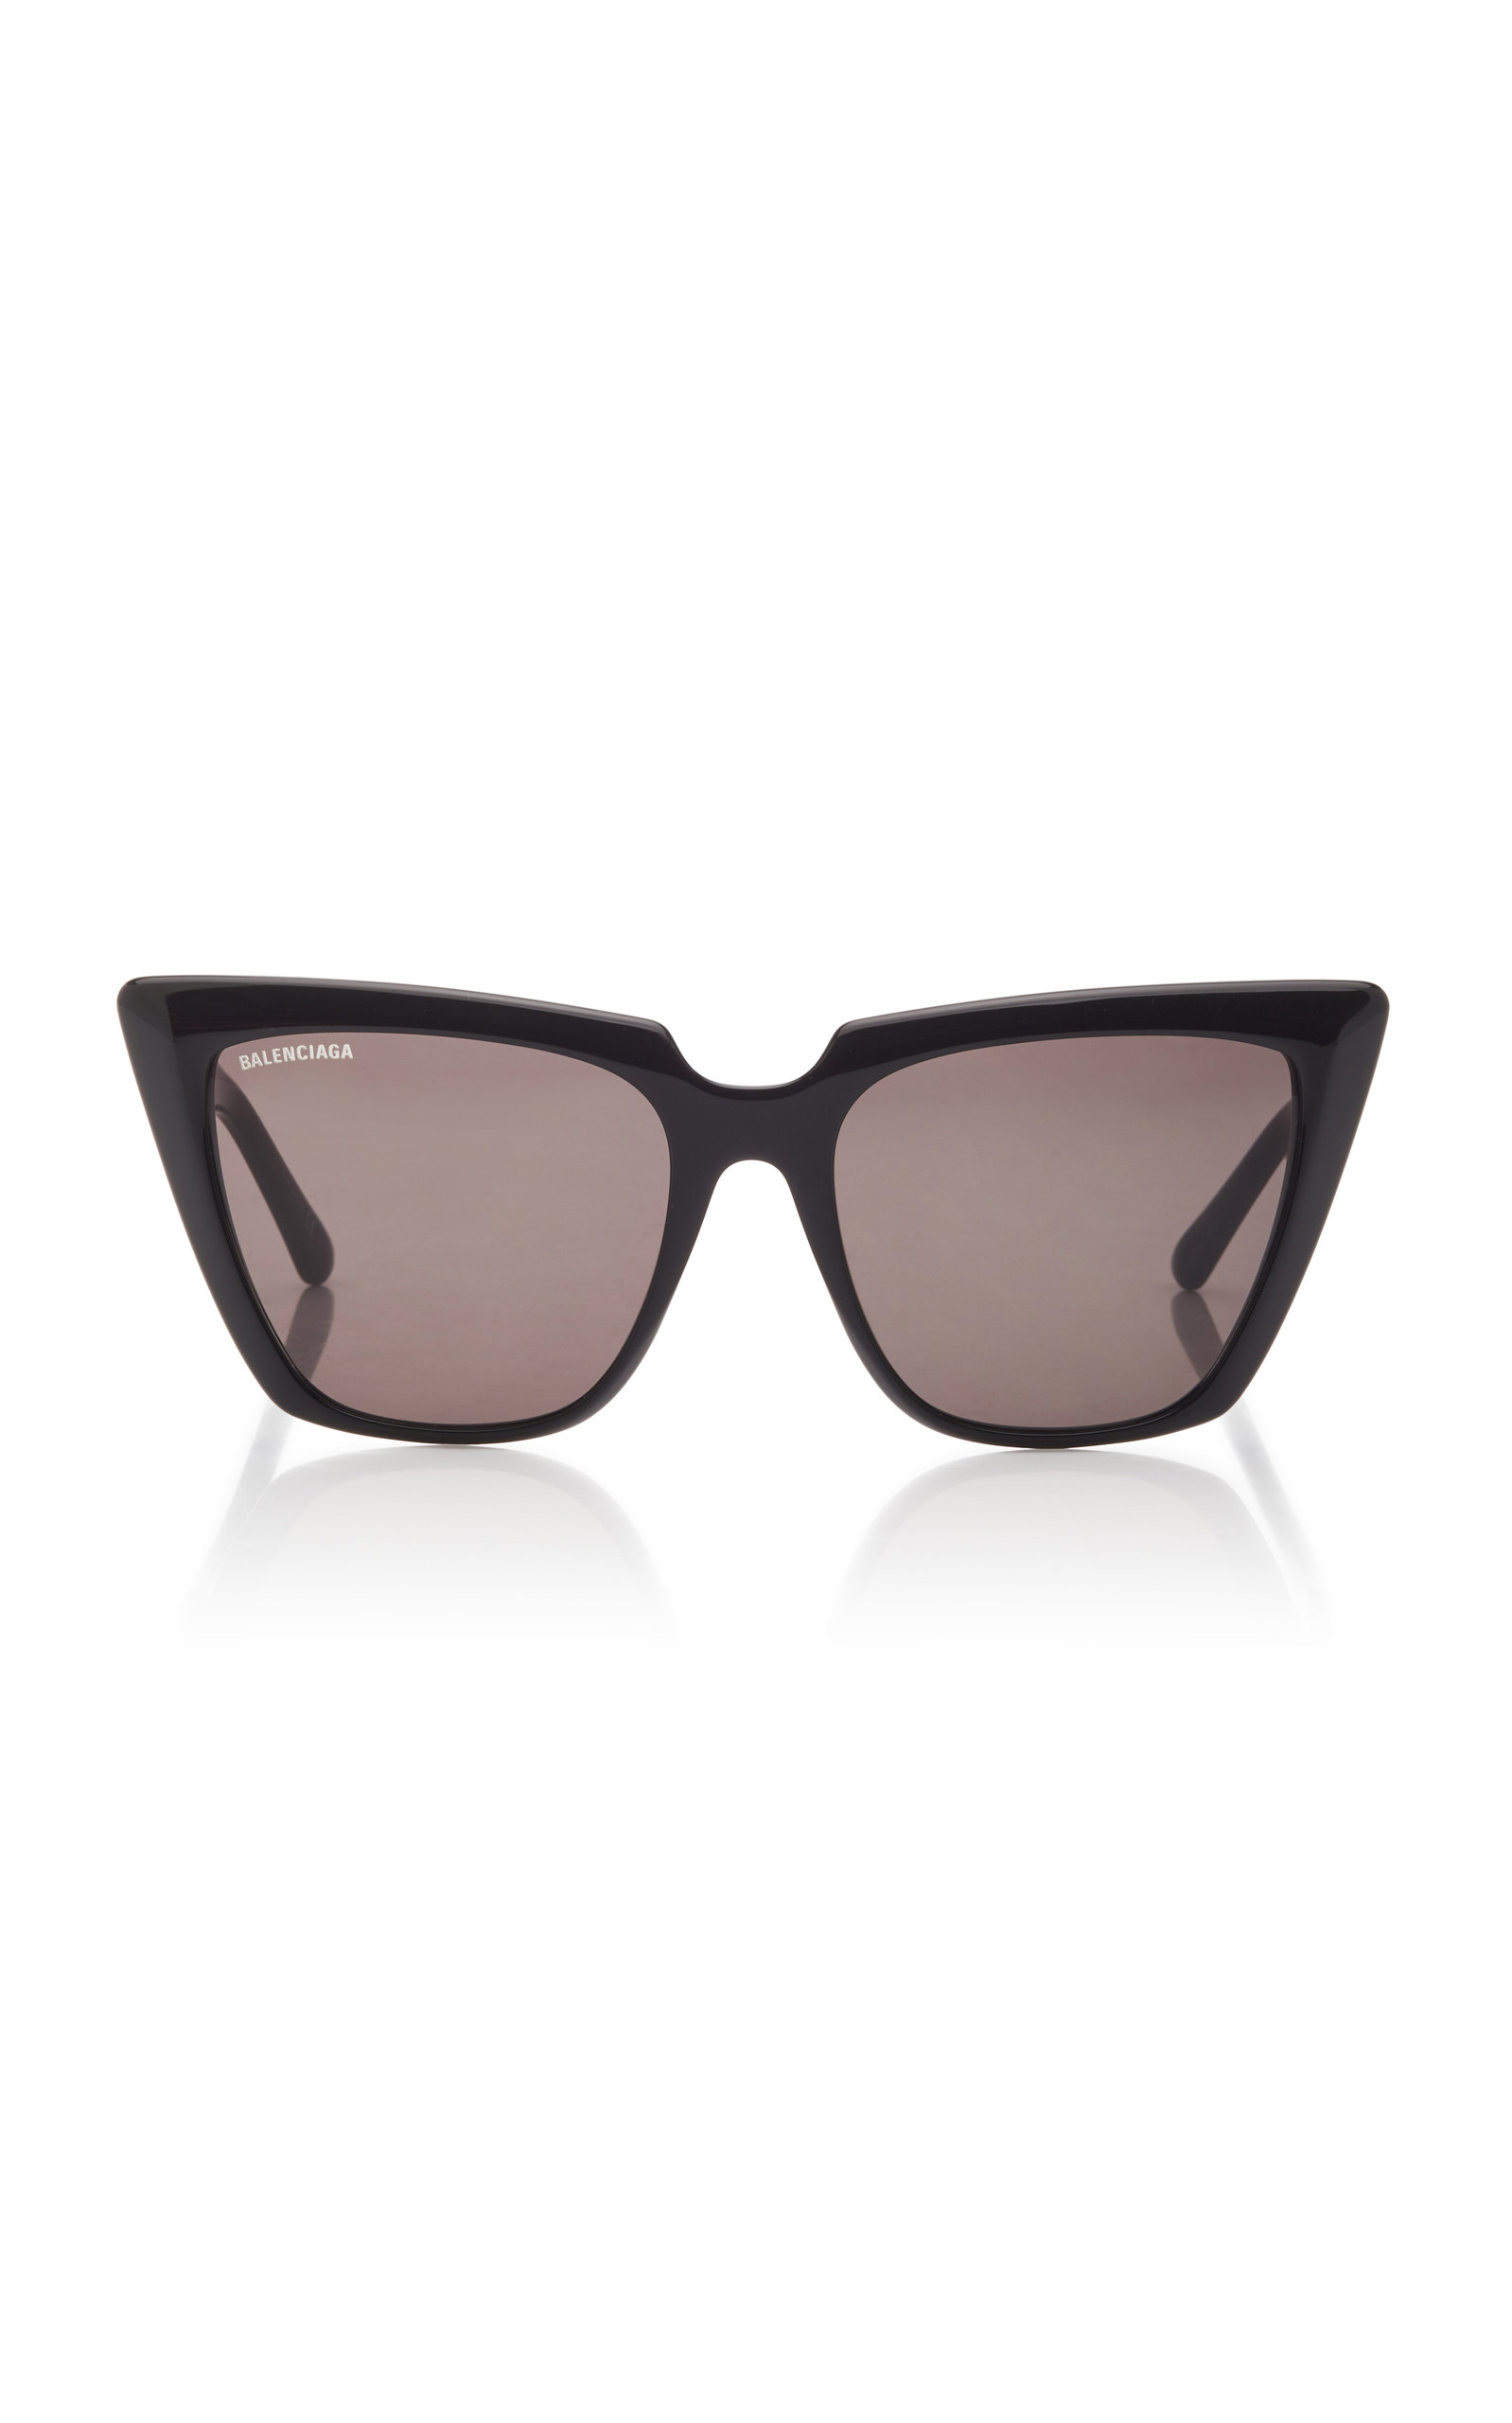 Balenciaga - Women's Tortoiseshell Acetate Square-Frame Sunglasses - Black/brown - Moda Operandi